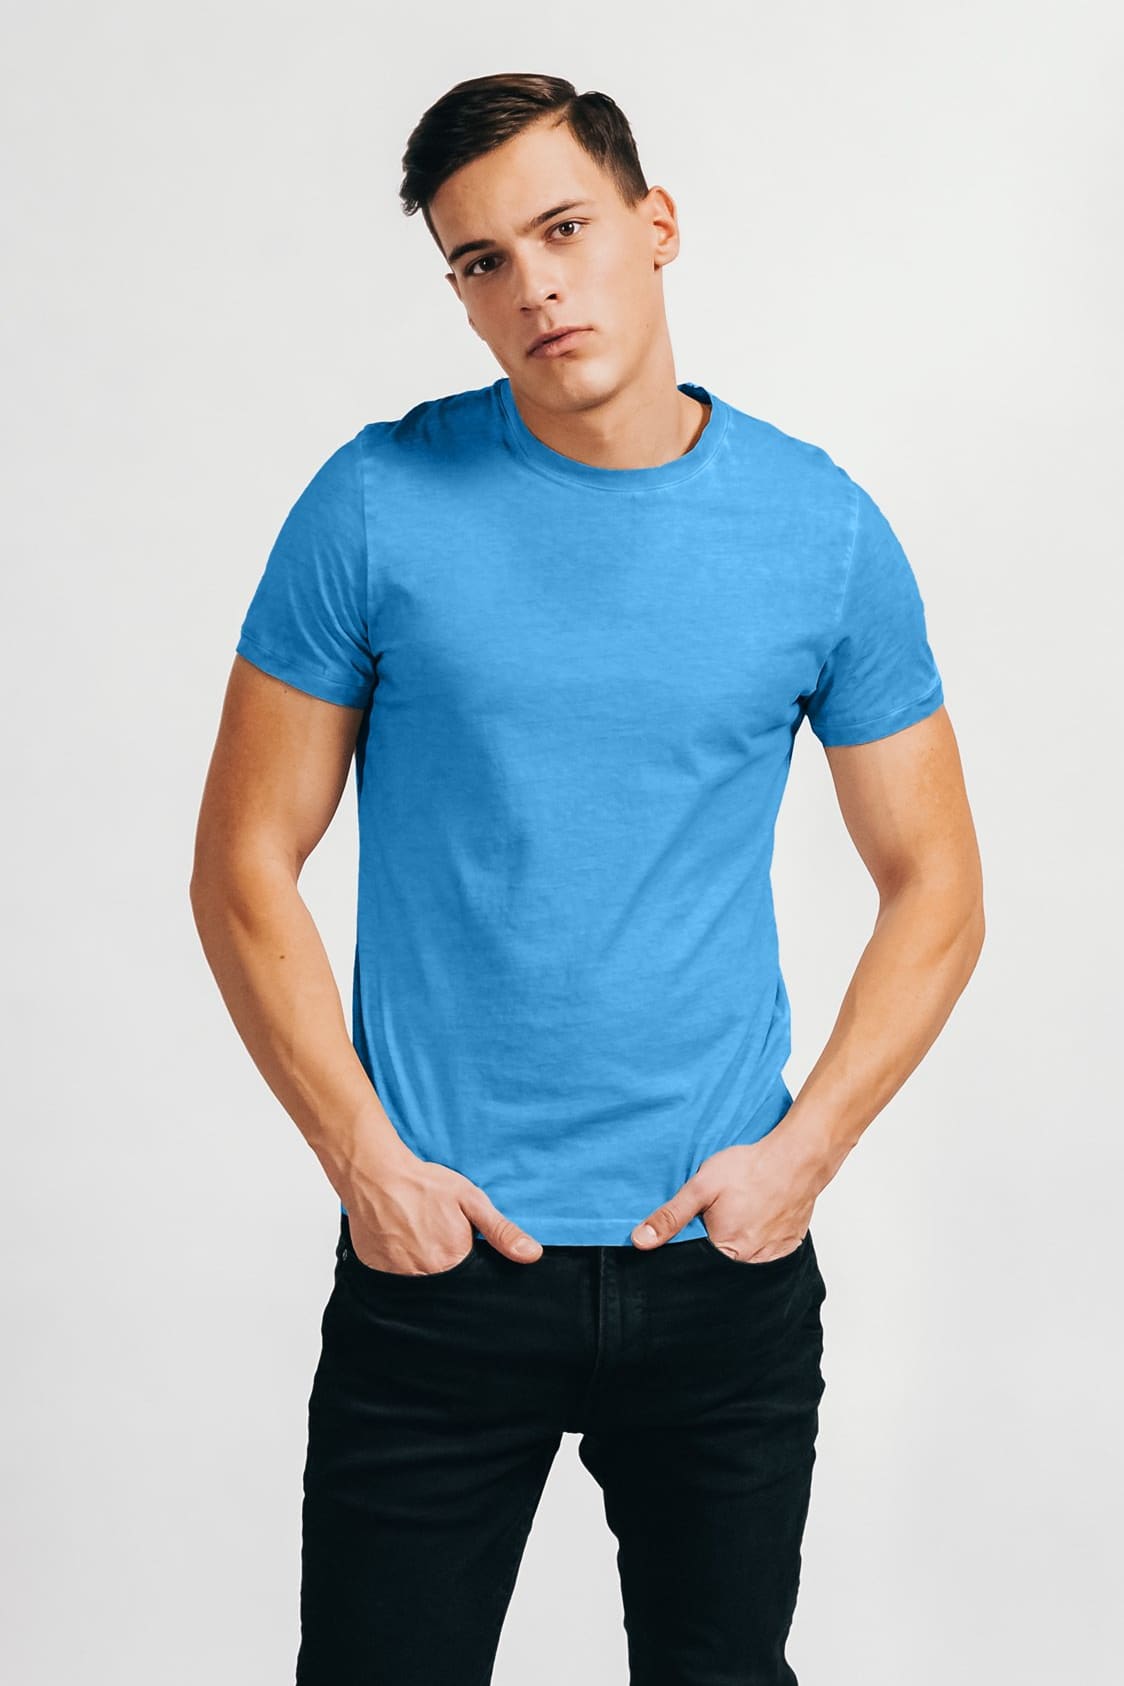 Smart Casual Cotton T-Shirt - Lavezzi